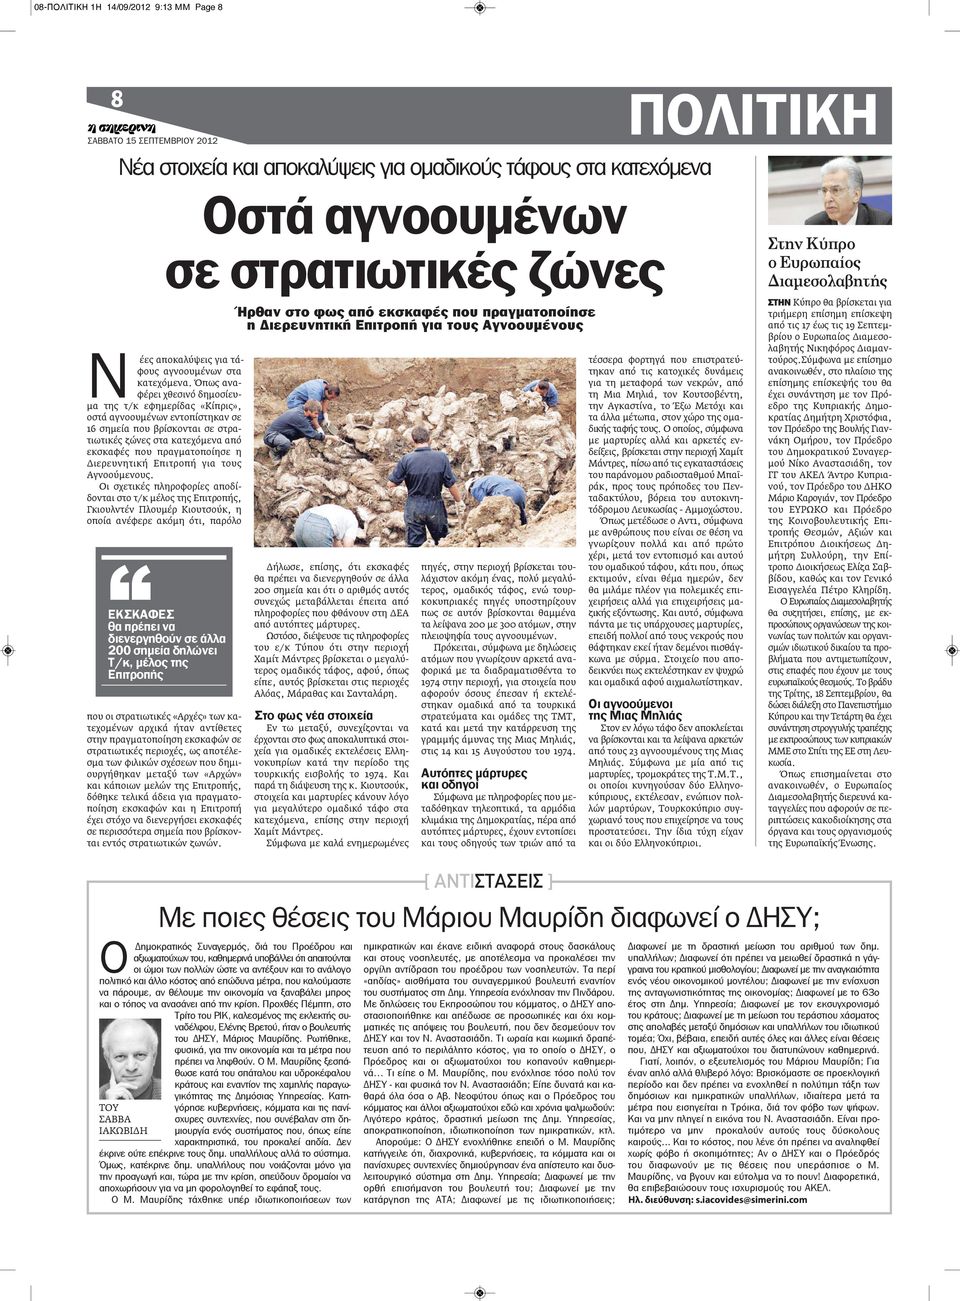 Όπως αναφέρει χθεσινό δημοσίευμα της τ/κ εφημερίδας «Κίπρις», οστά αγνοουμένων εντοπίστηκαν σε 16 σημεία που βρίσκονται σε στρατιωτικές ζώνες στα κατεχόμενα από εκσκαφές που πραγματοποίησε η